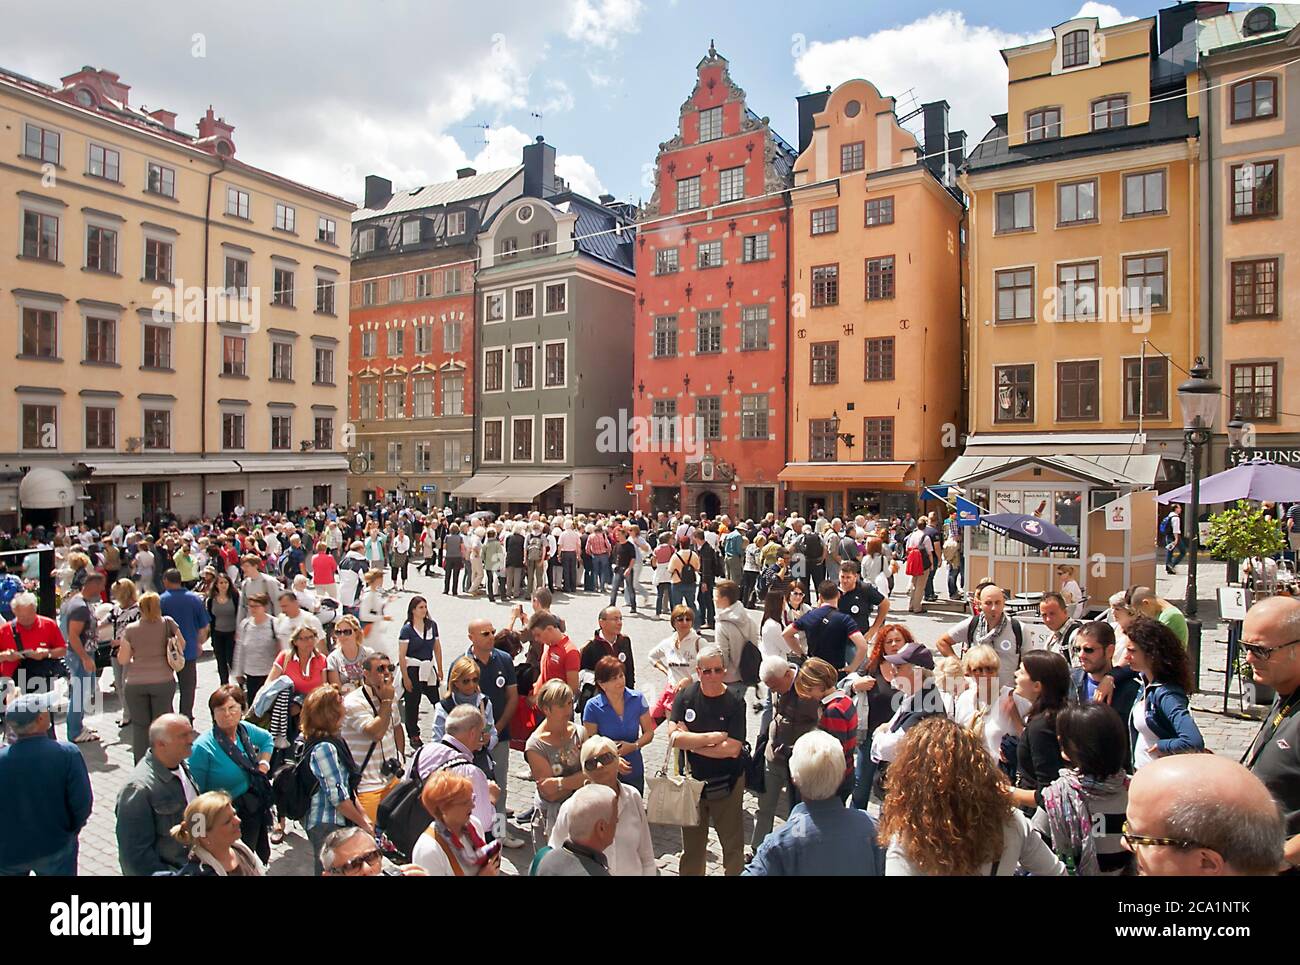 Stortorget oder Grand Square im historischen Stadtzentrum von Stockholm, Schweden Stockfoto